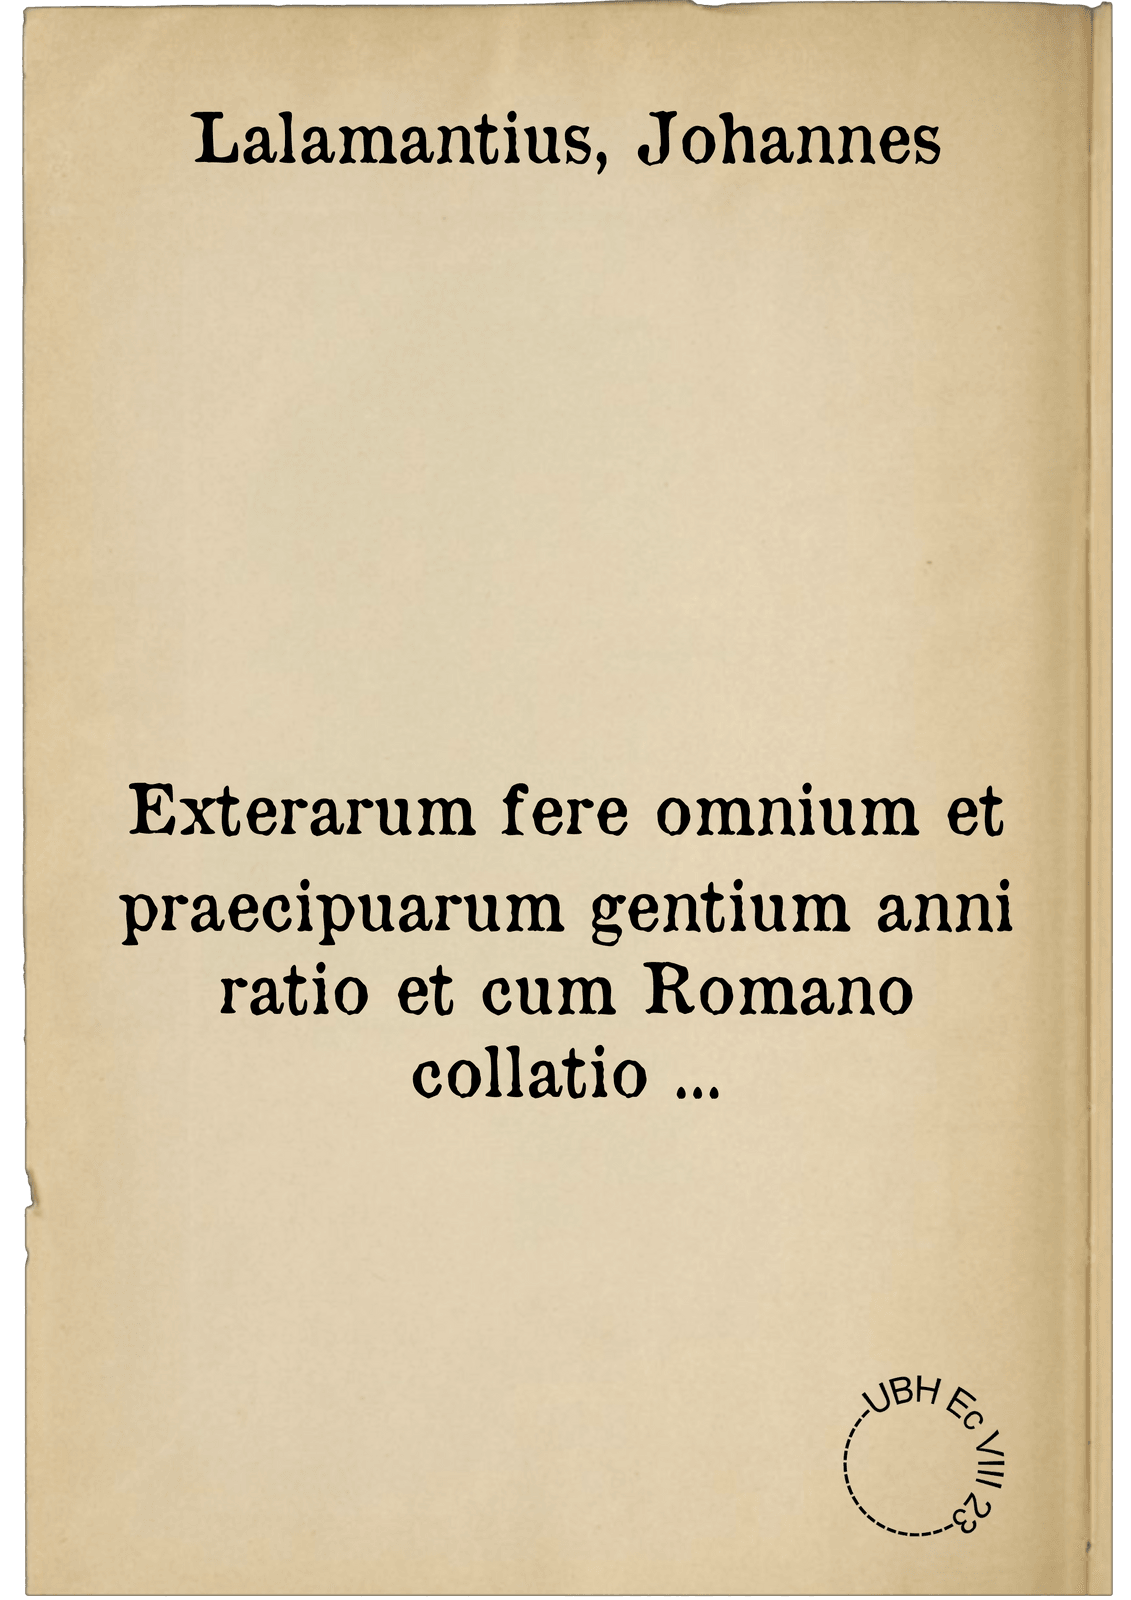 Exterarum fere omnium et praecipuarum gentium anni ratio et cum Romano collatio ...